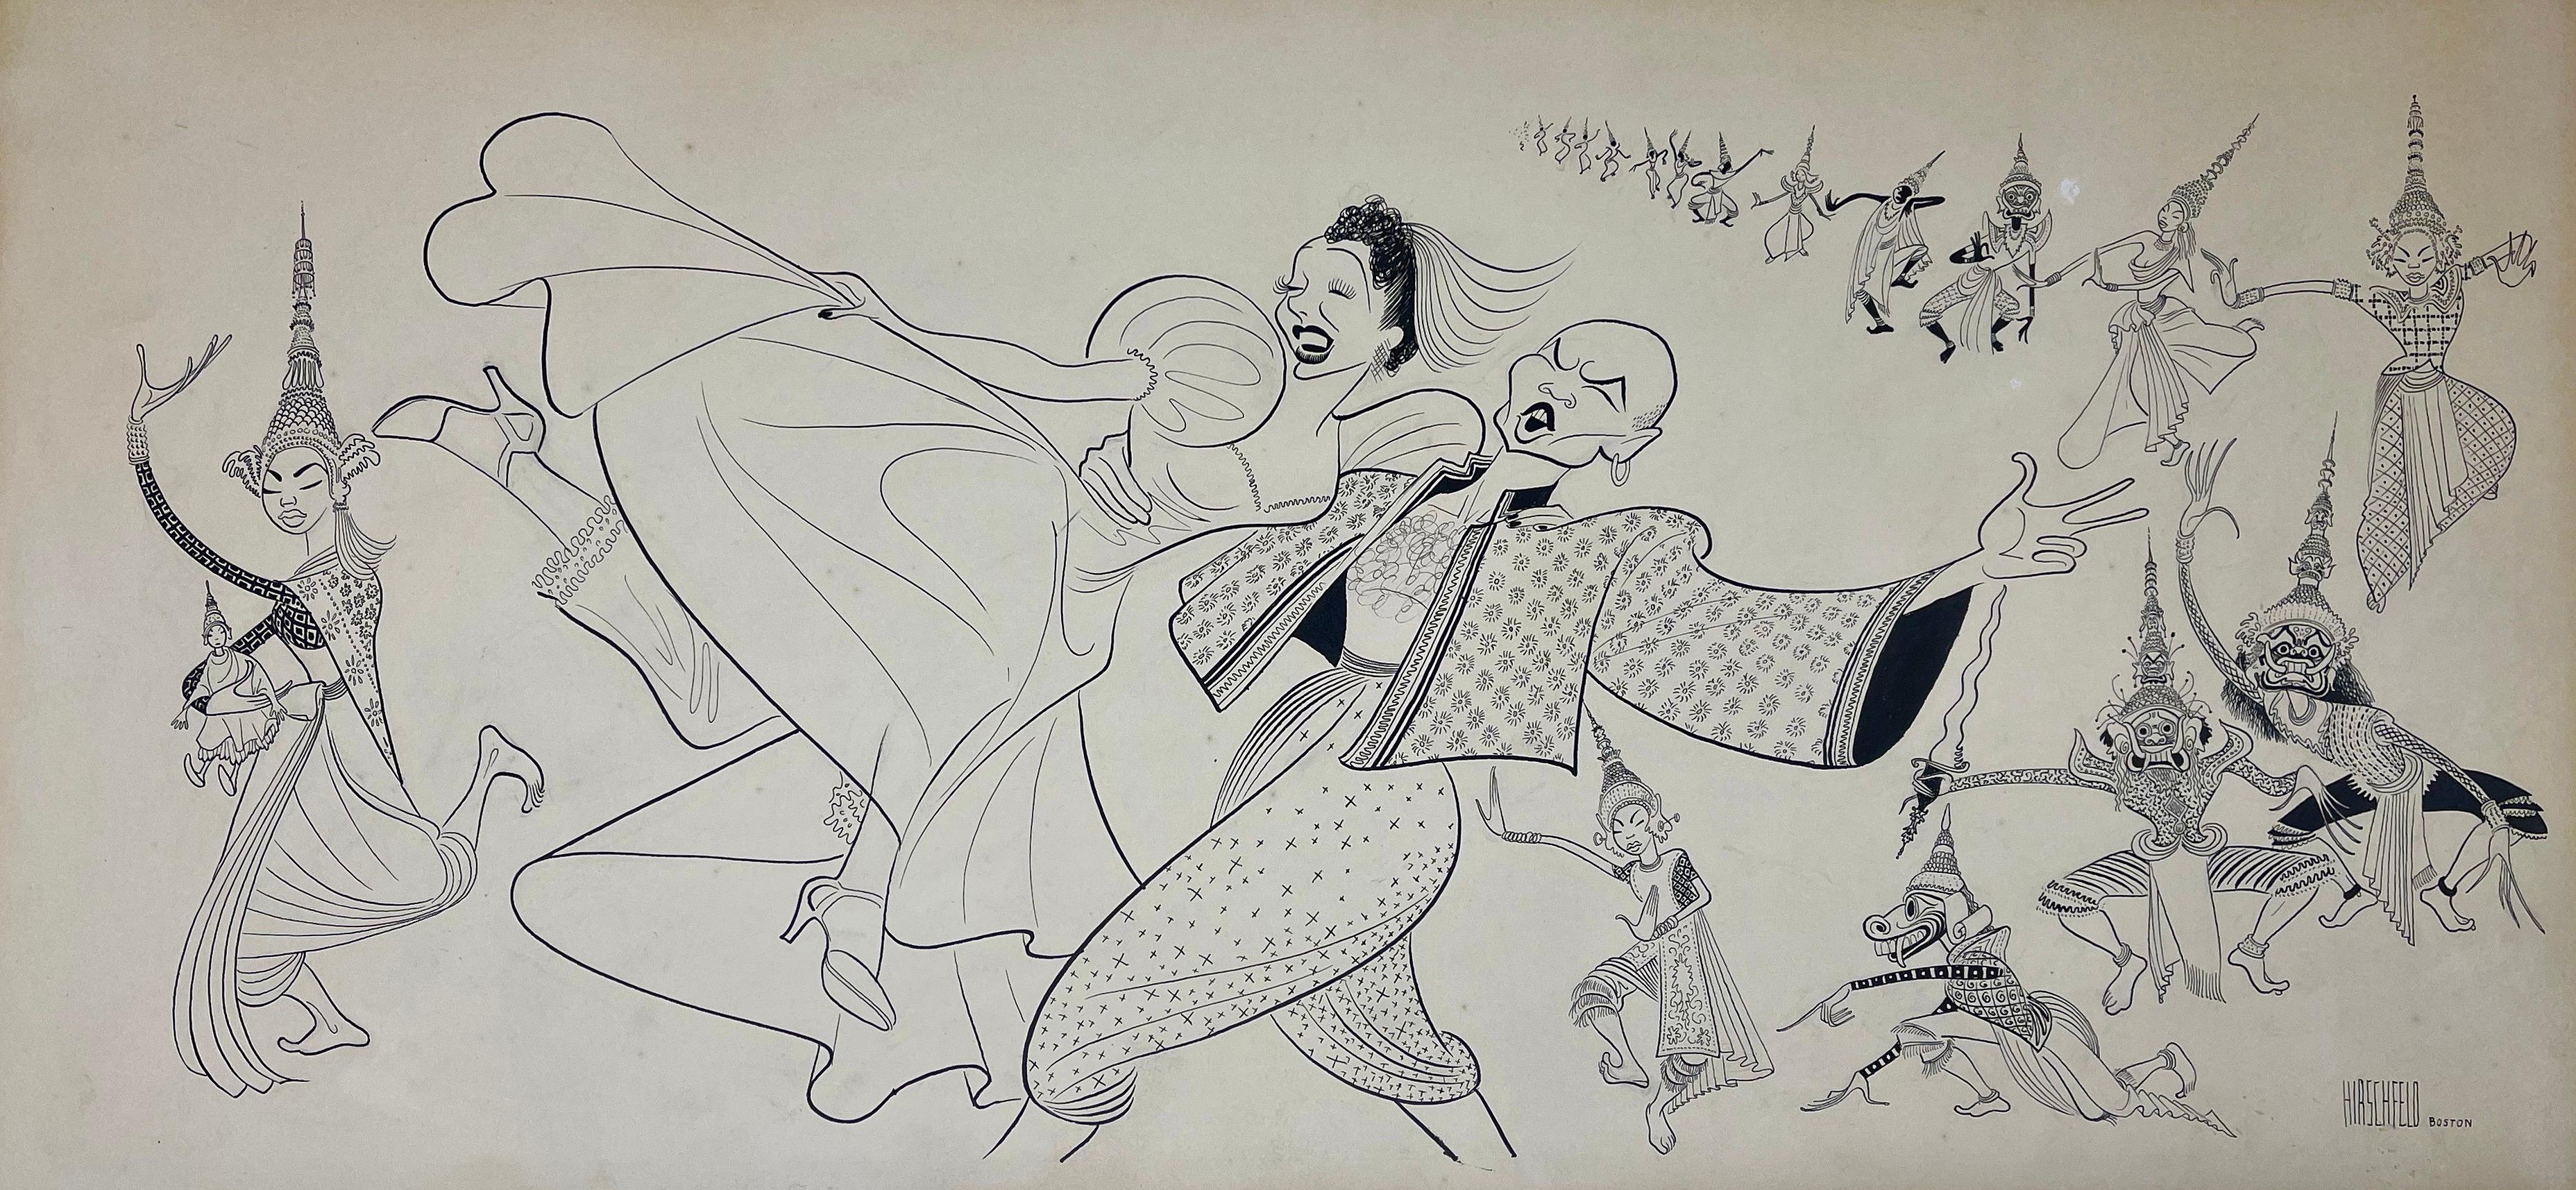 Albert Al Hirschfeld Figurative Art – ""King & I"" Orig 1951 Broadway-Zeichnung veröffentlicht NYT Tony Awards Mitte des 20. Jahrhunderts